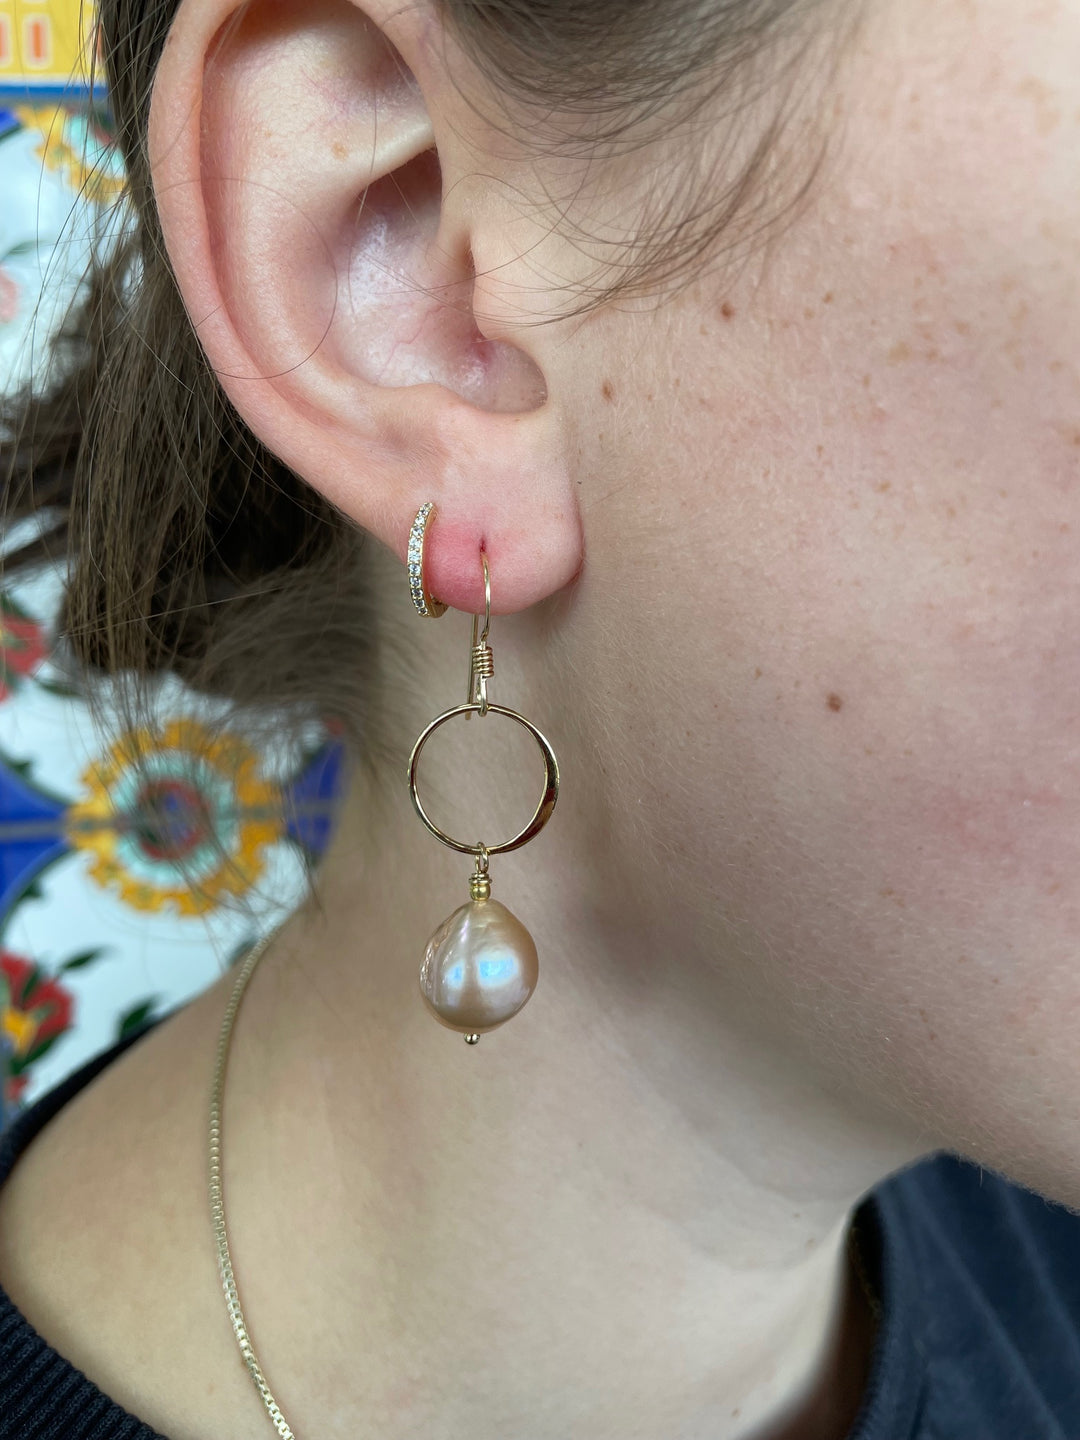 Pale pink baroque freshwater pearl earrings